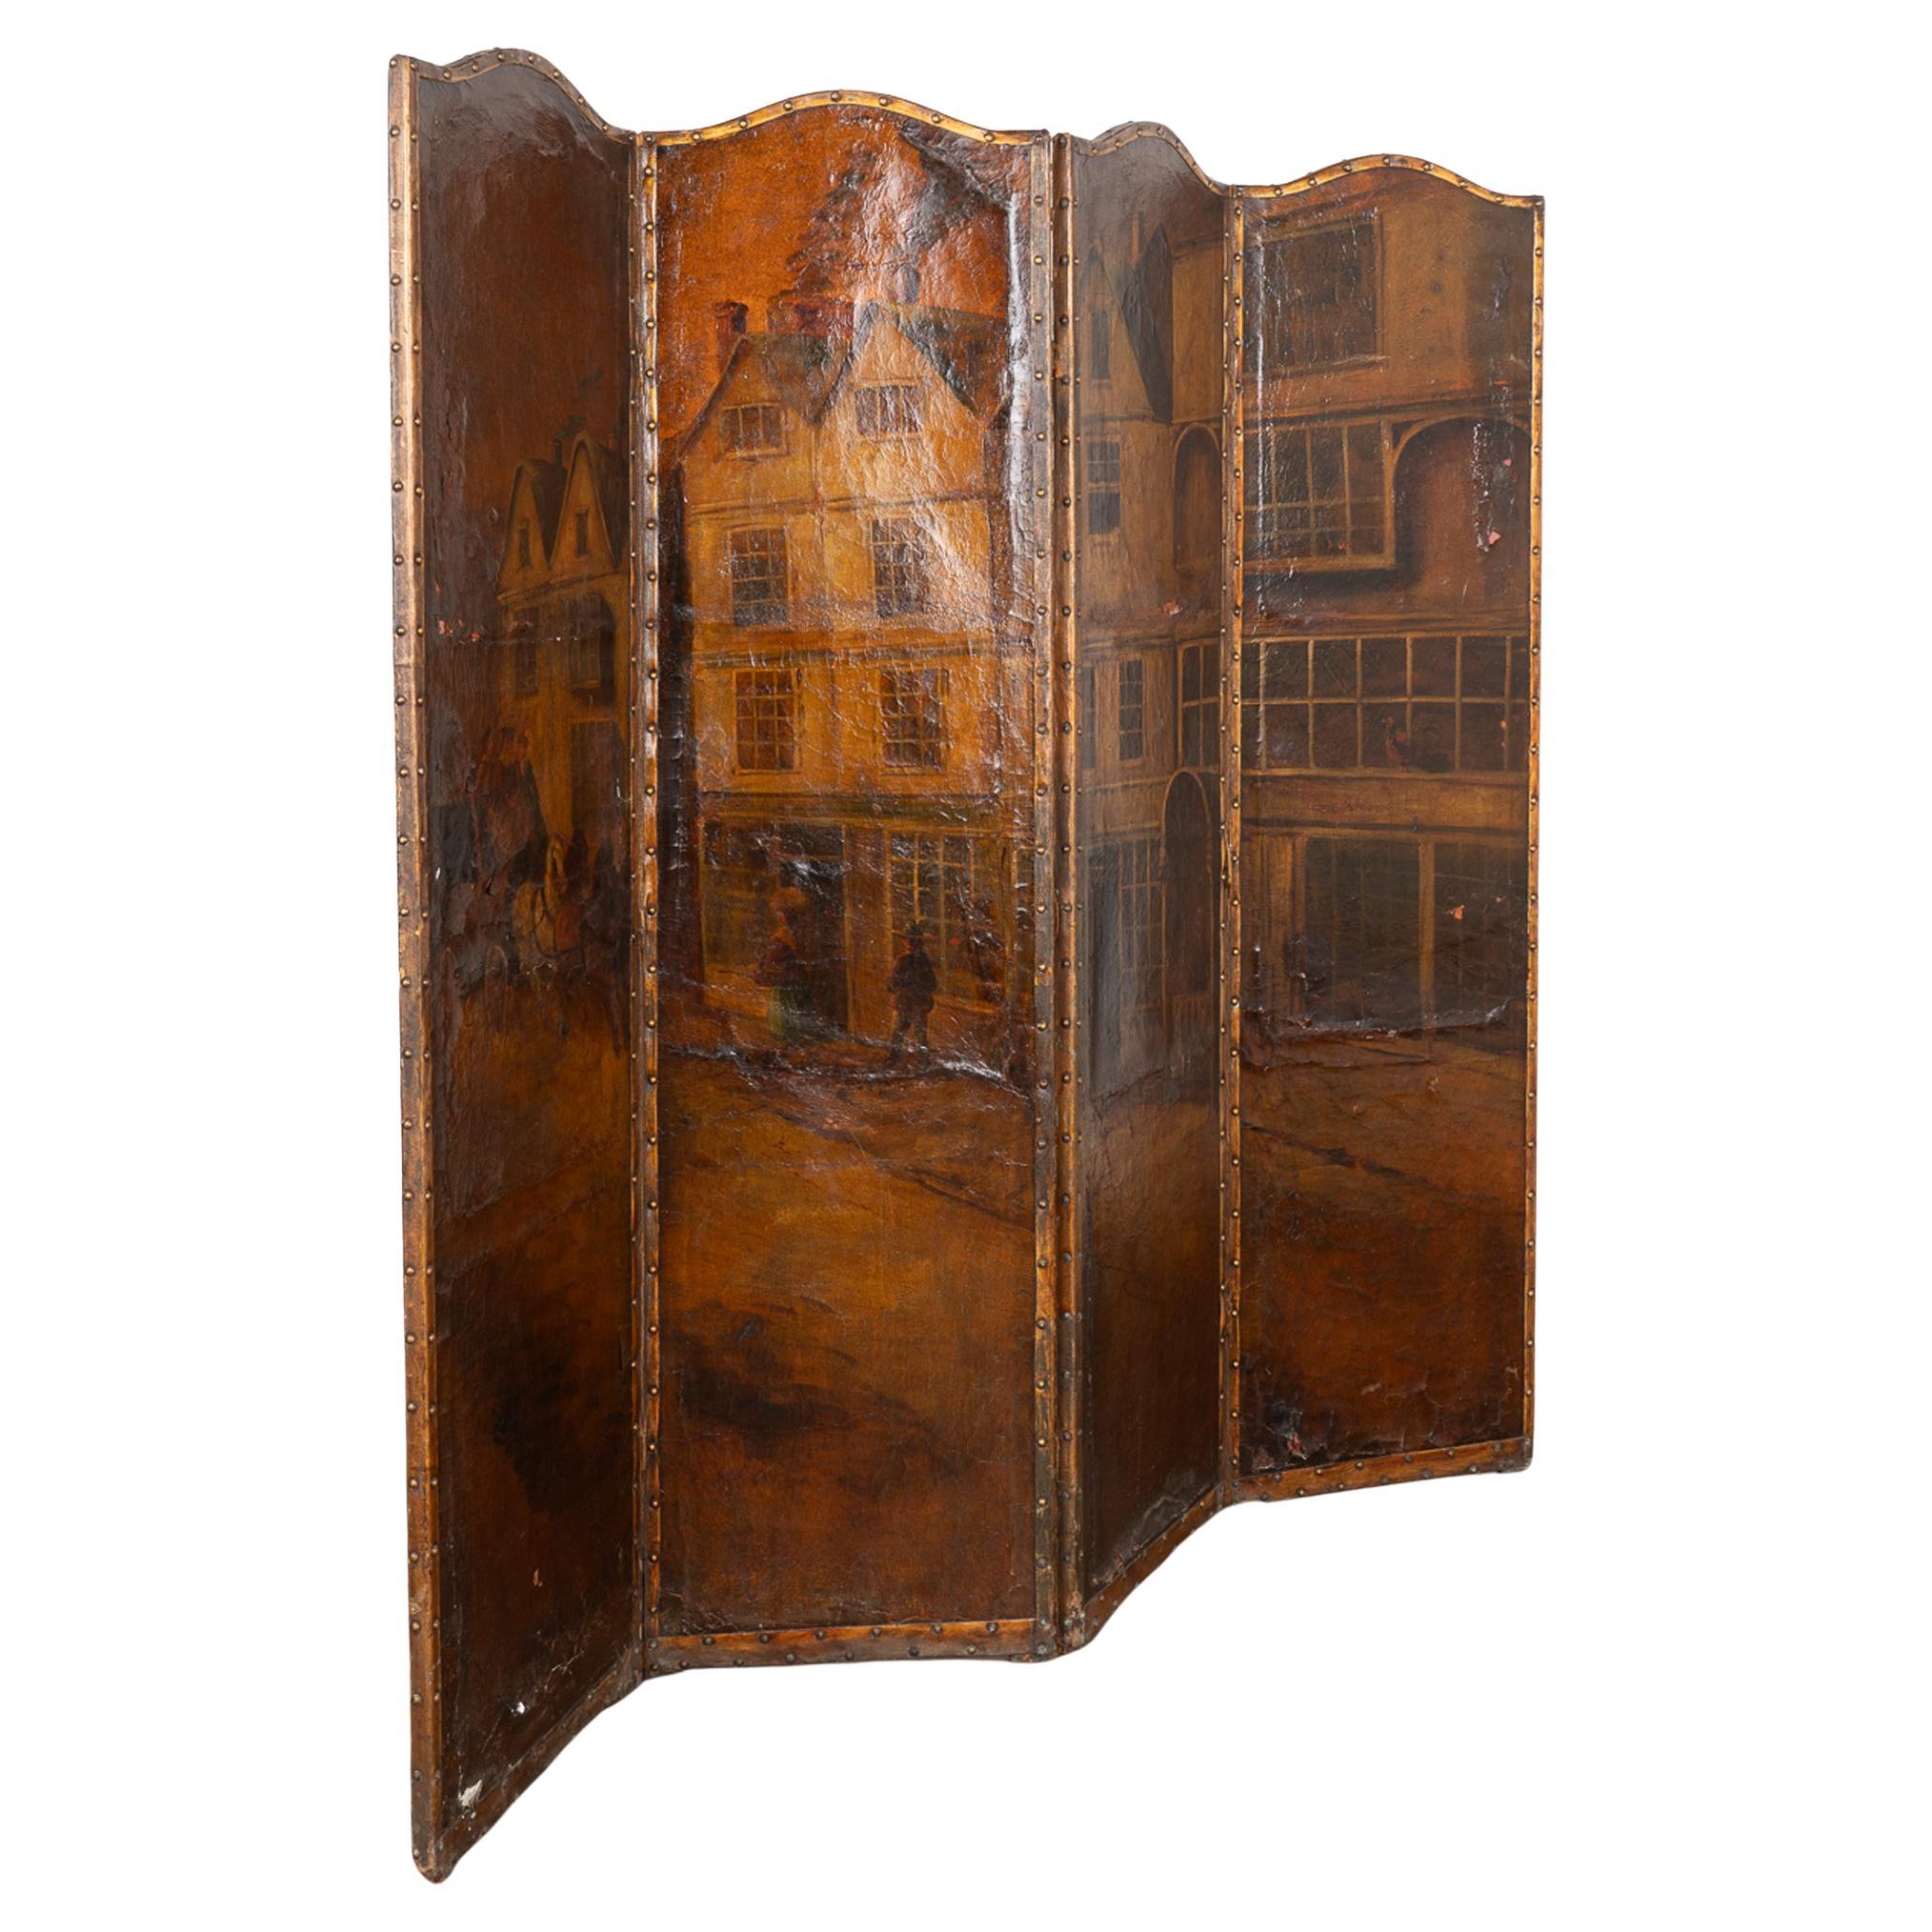 Original Öl auf Leinwand gemalt 4 Panel Bildschirm Raumteiler England um 1900-20